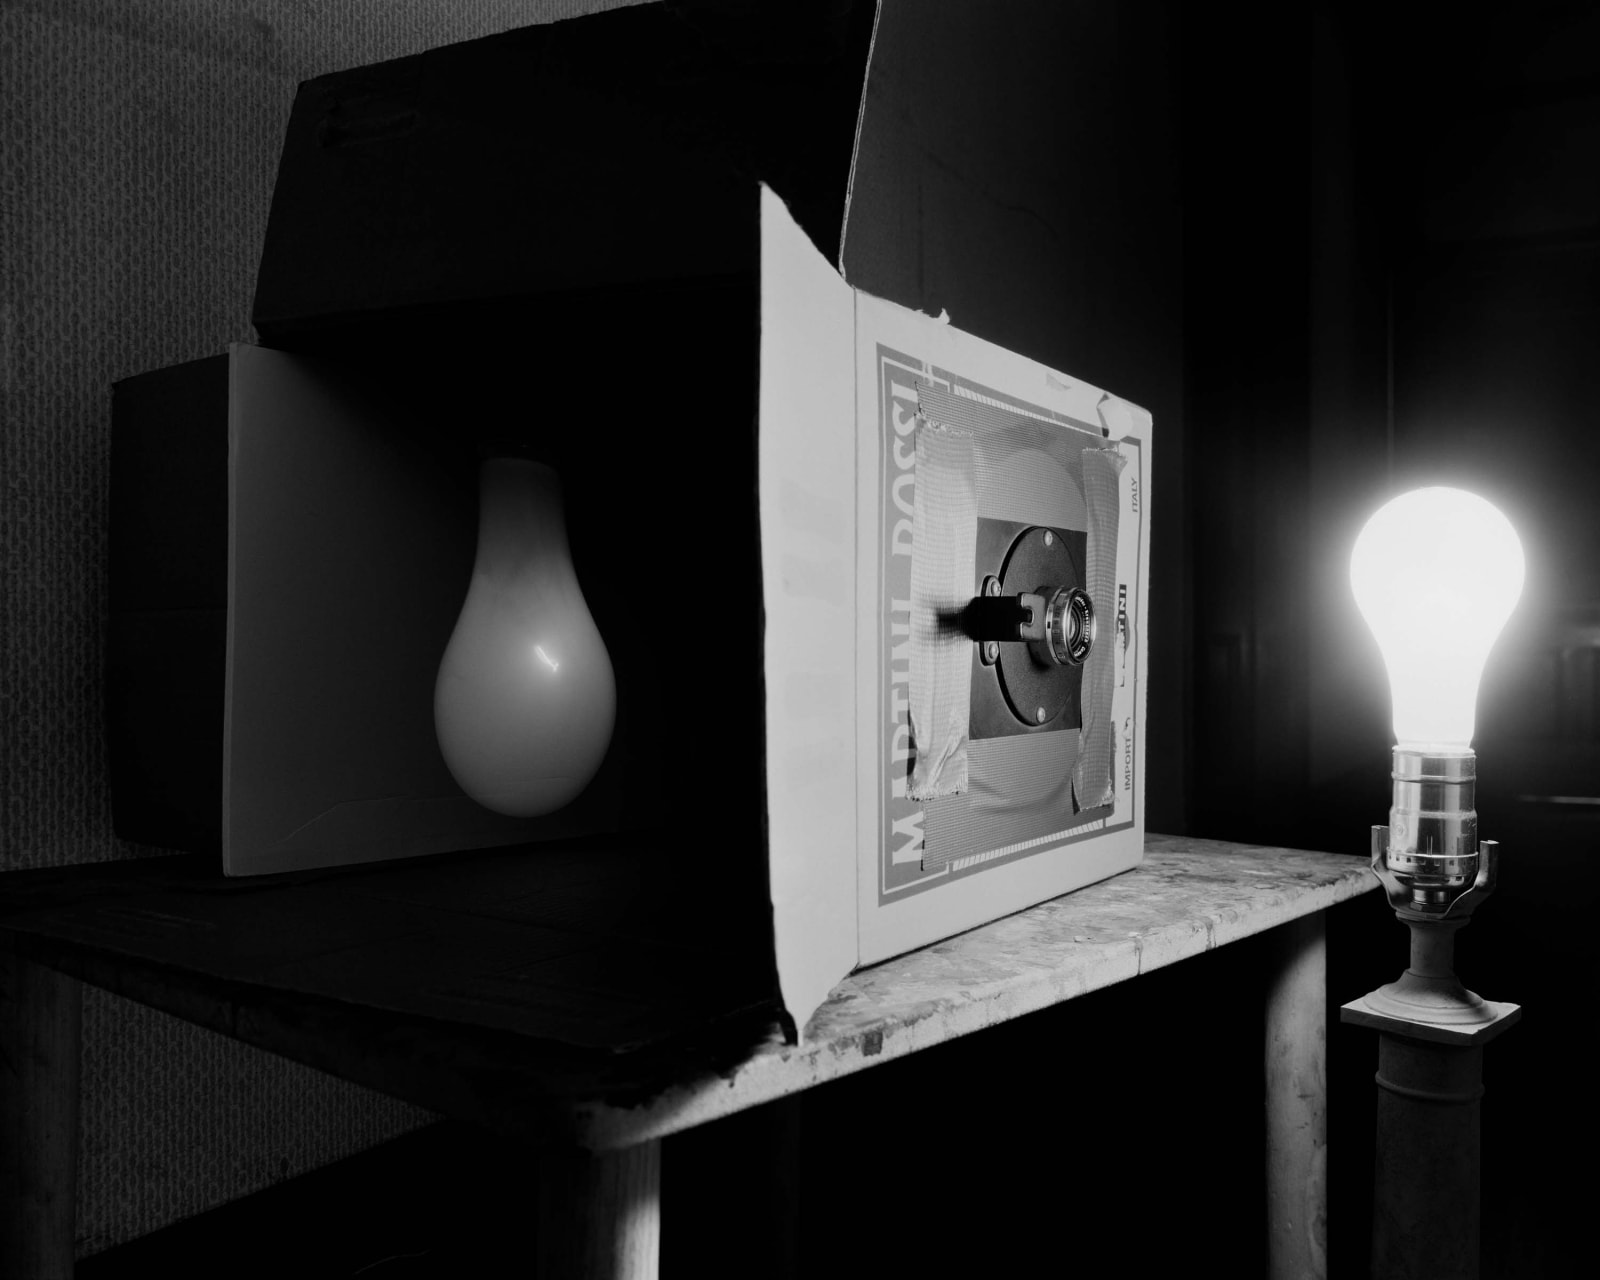 Abelardo Morell Lightbulb demonstrating Camera Obscura in black and white